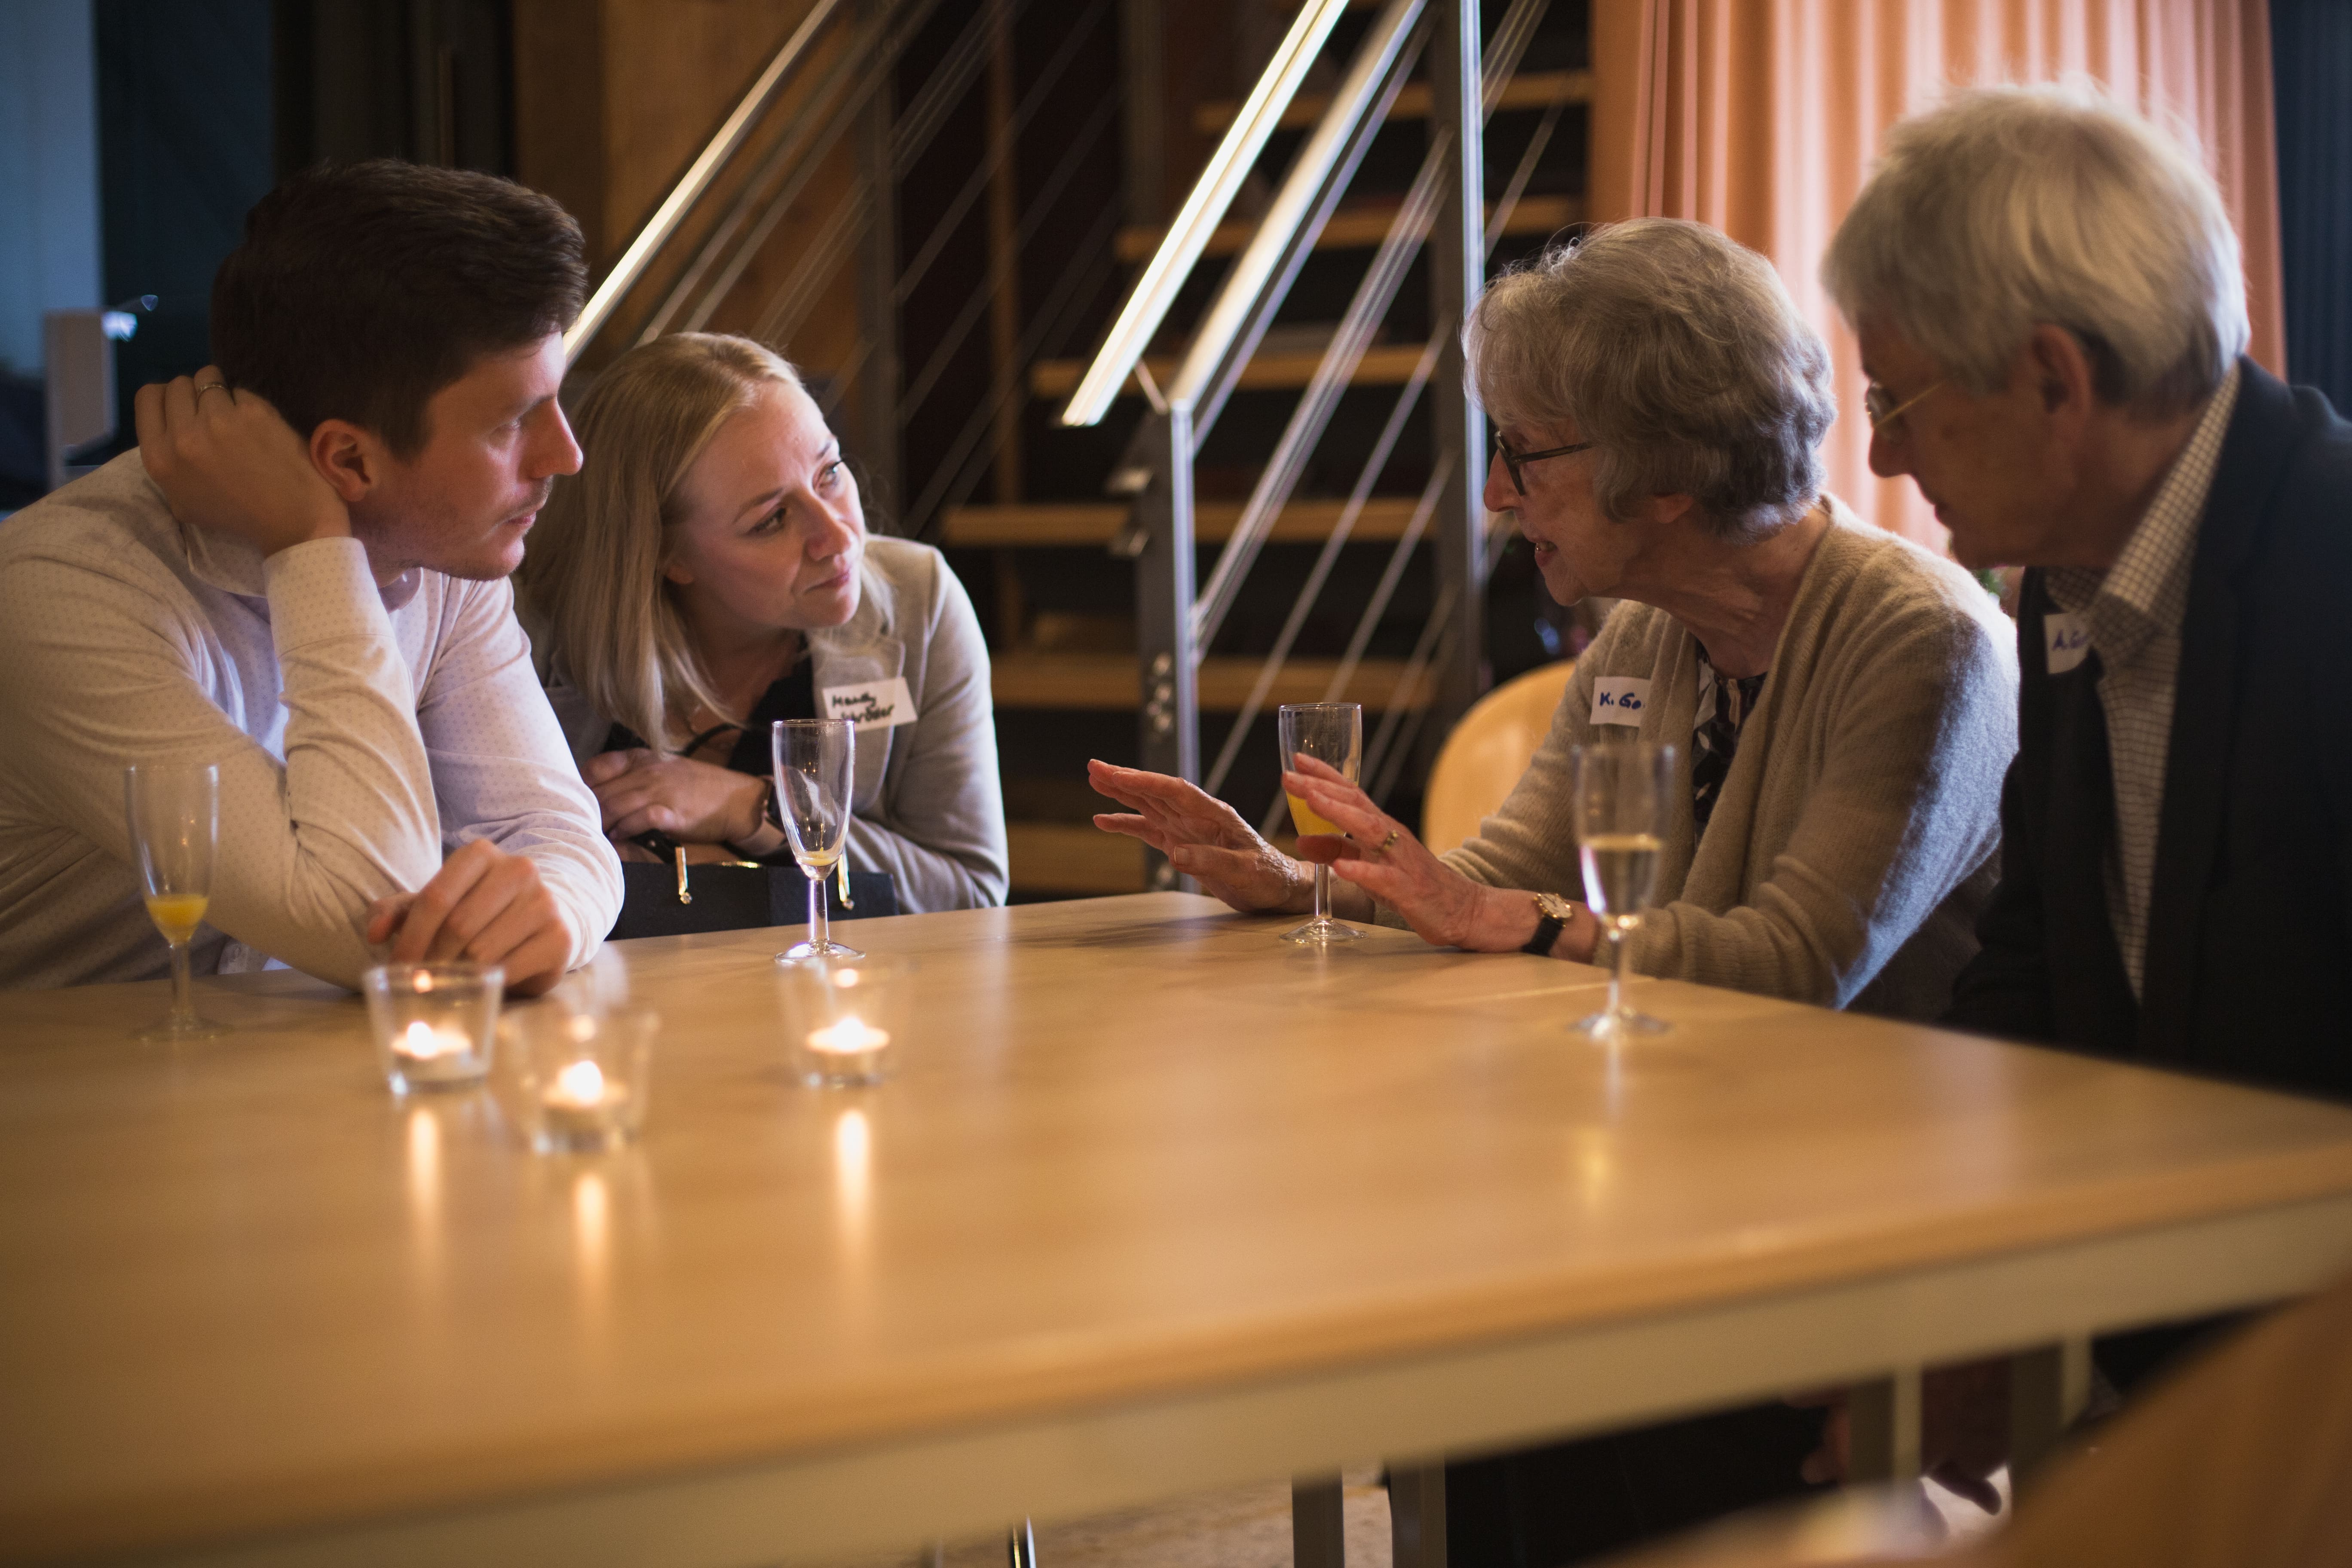 Unsere HASPA-Unterstützer:innen Nicolaj Kramer und Mandy Schröder und Spender:innen Karin und Albrecht Goerth sitzen an einem Tisch und sind tief im Gespräch. 